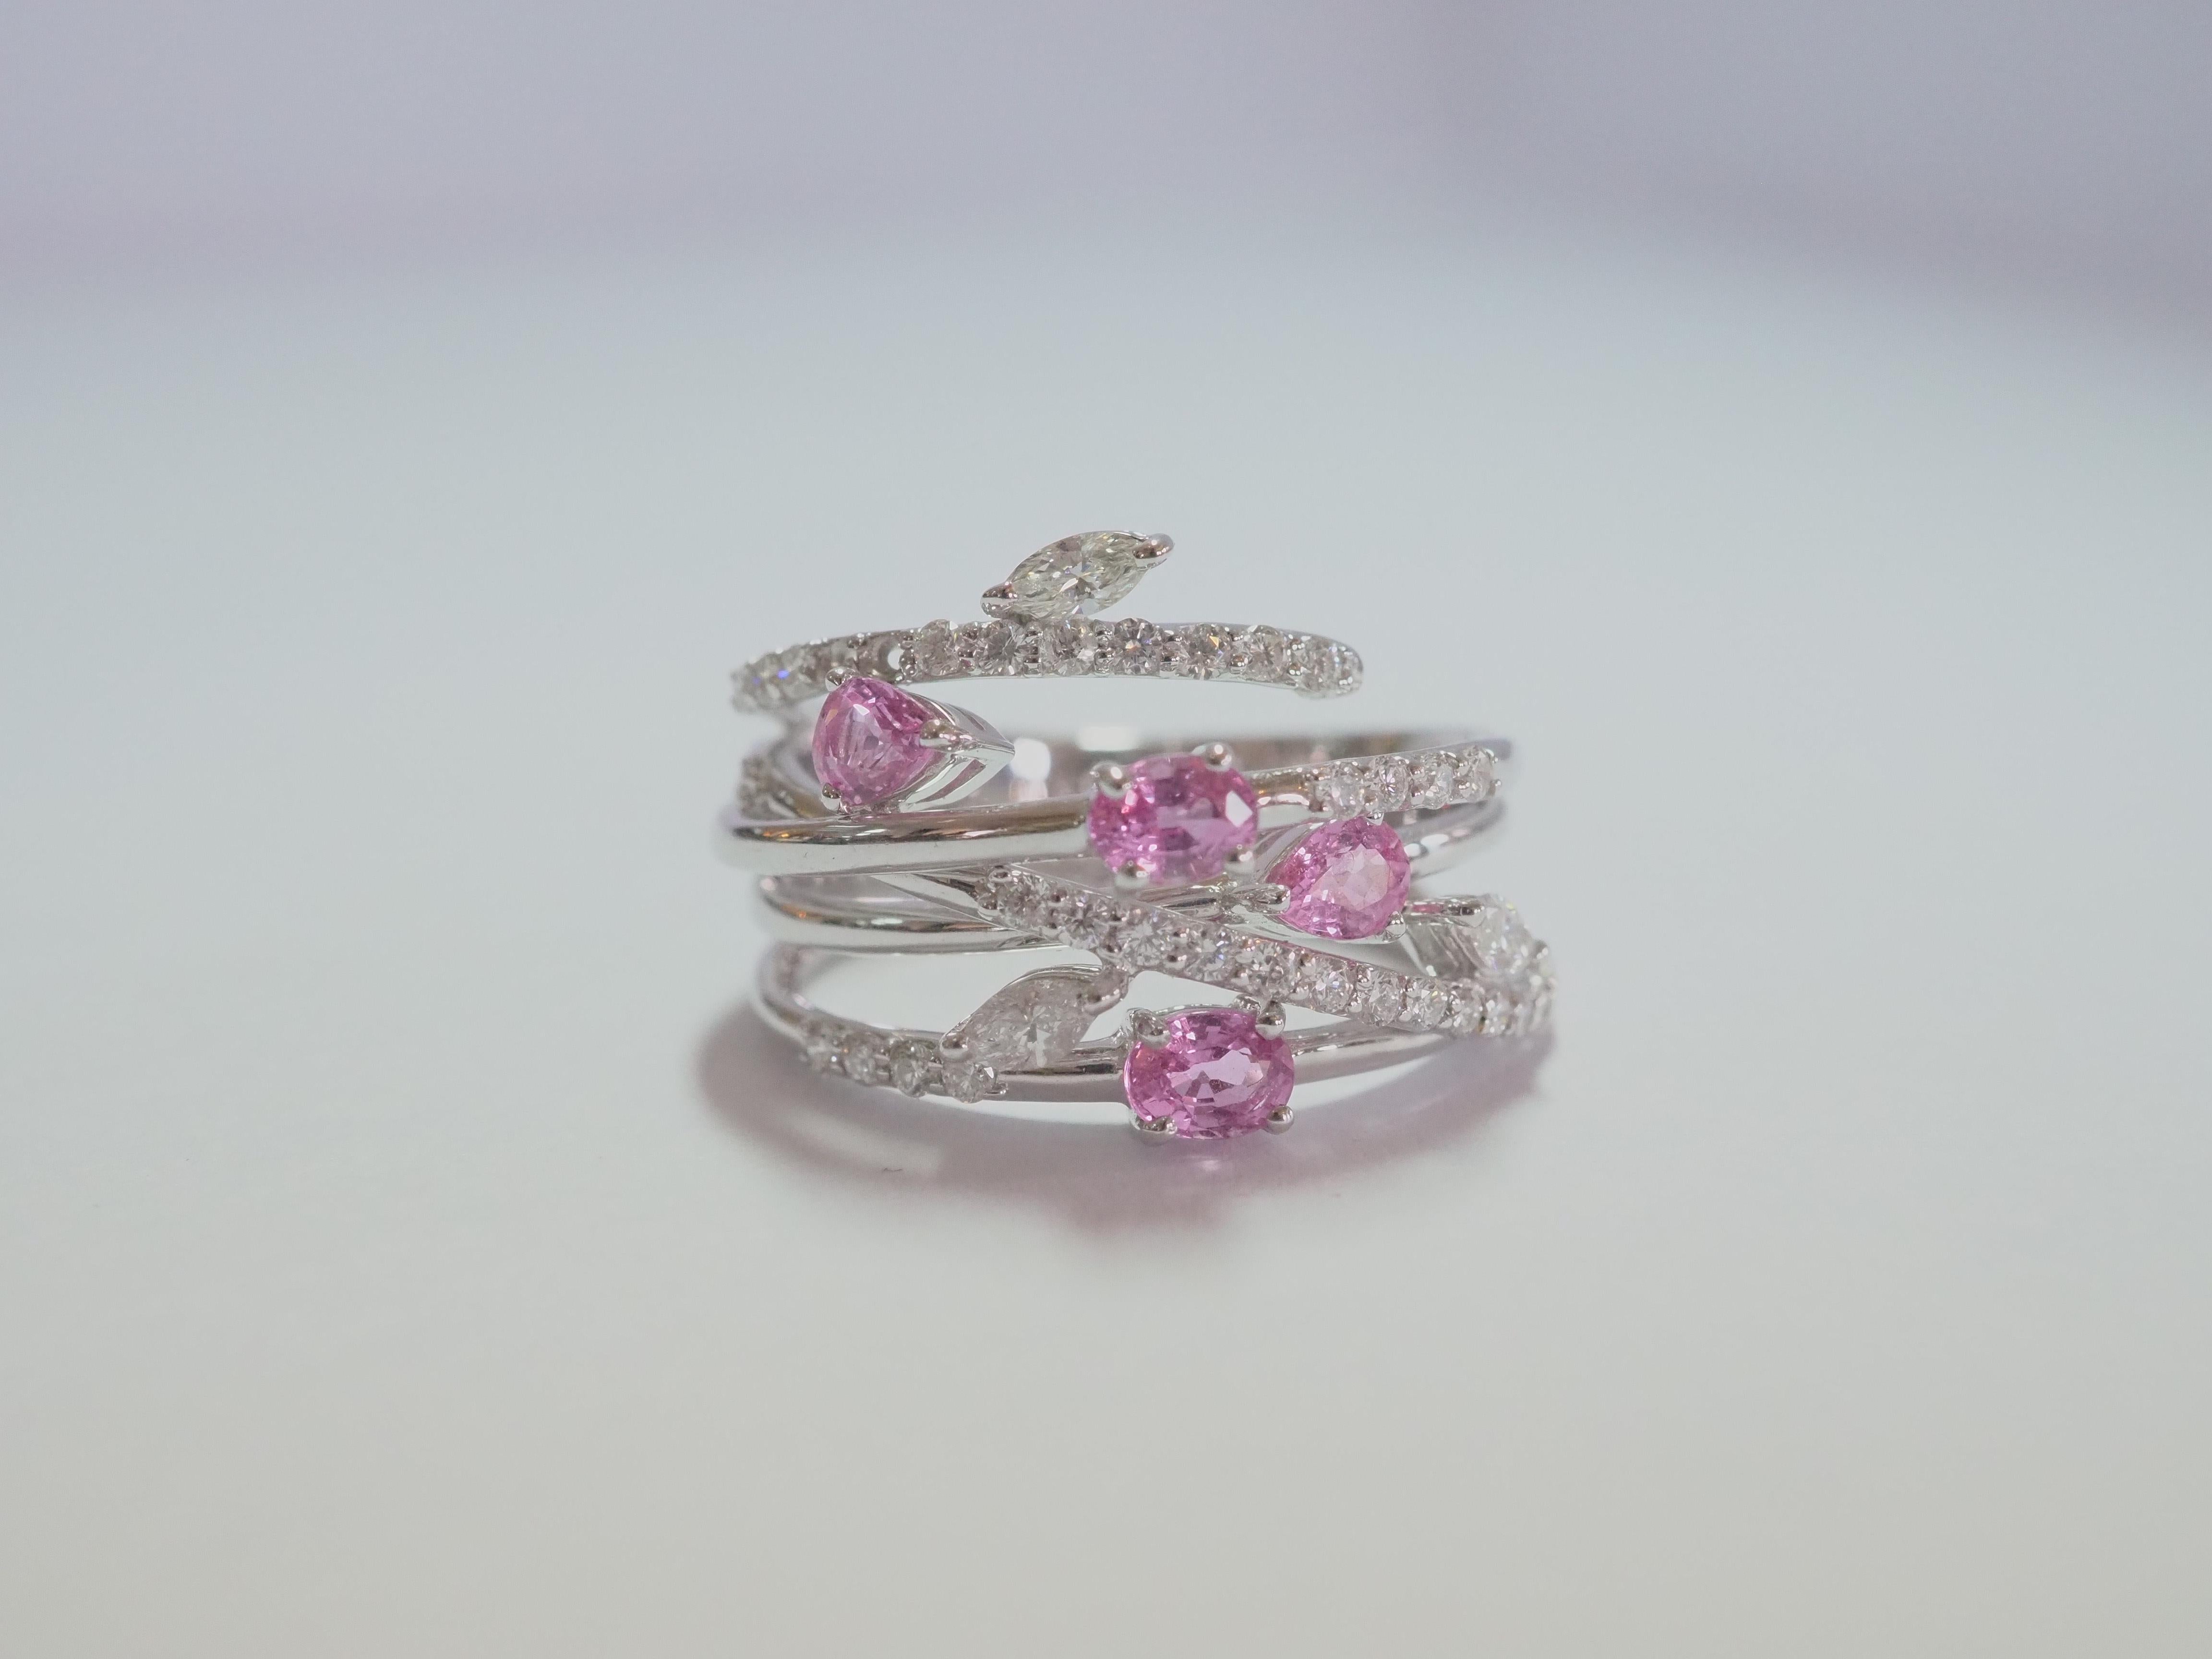 Dieses feine Designerstück ist sehr elegant. Die leuchtend rosafarbenen Saphire im Birnenschliff (2 Stück) und im Ovalschliff (2 Stück) sind fein säuberlich auf das glänzende Band gesetzt. Dieses Stück ist eindeutig von floralen Themen inspiriert,